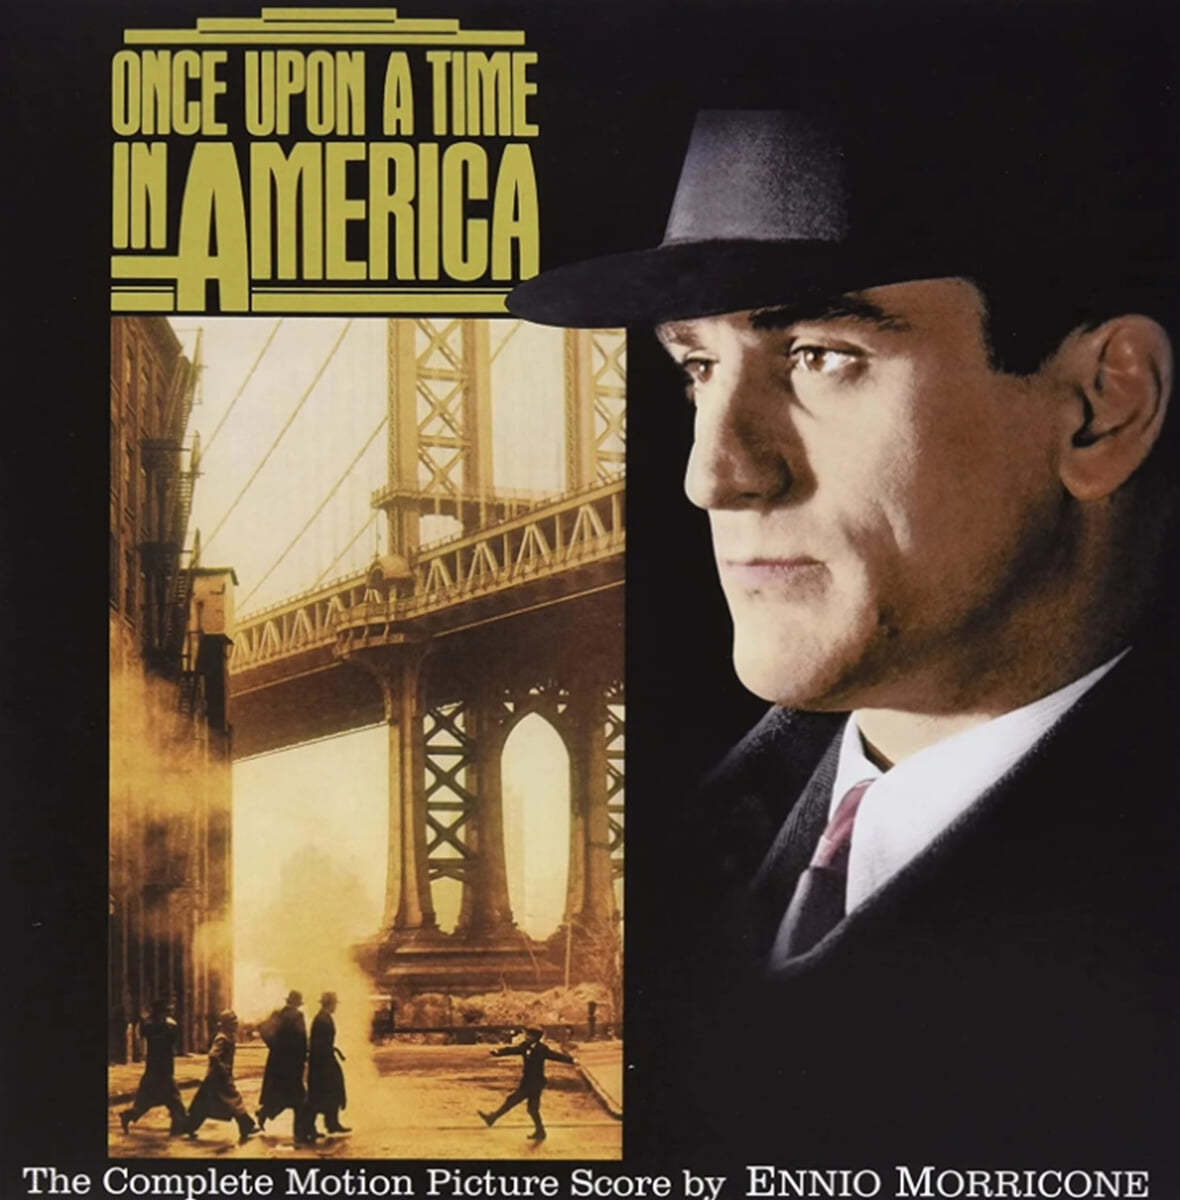 원스 어폰 어 타임 인 아메리카 영화음악 (Once Upon A Time In America OST by Ennio Morricone) [골드 컬러 LP]